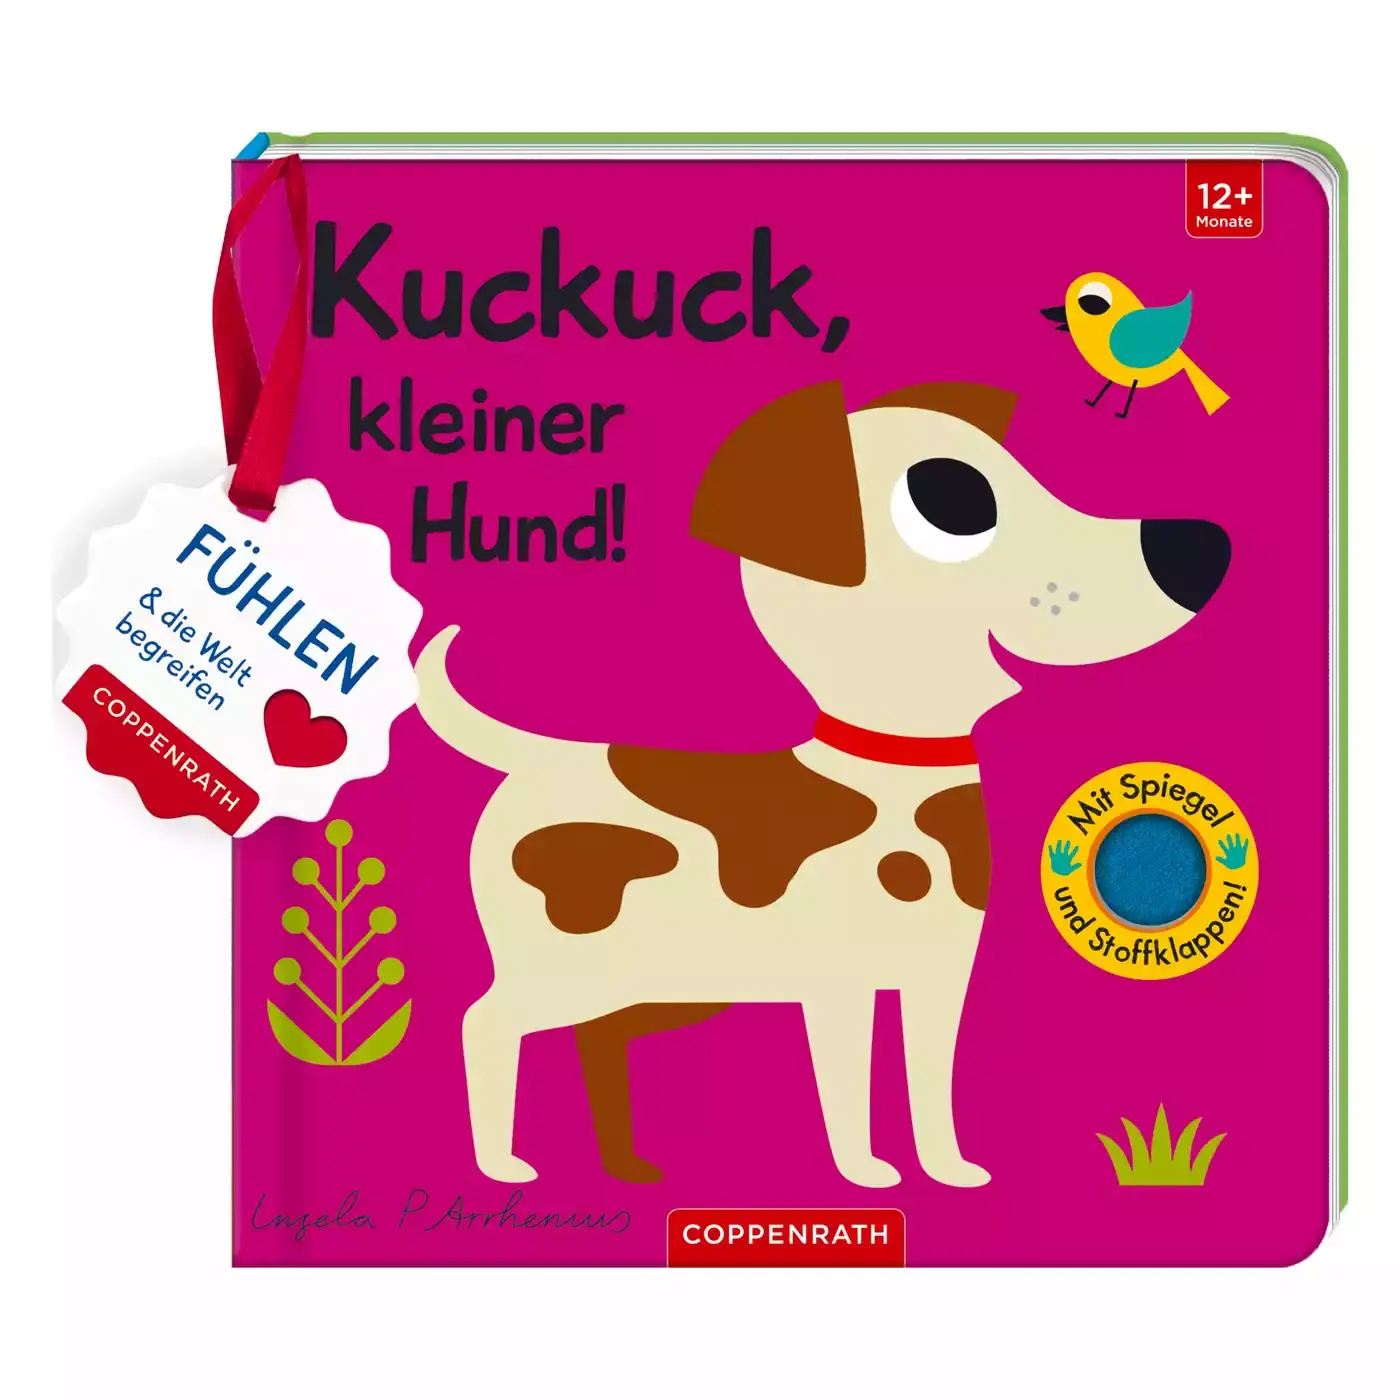 Mein Filz-Fühlbuch Kuckuck, kleiner Hund COPPENRATH 2000576309901 1